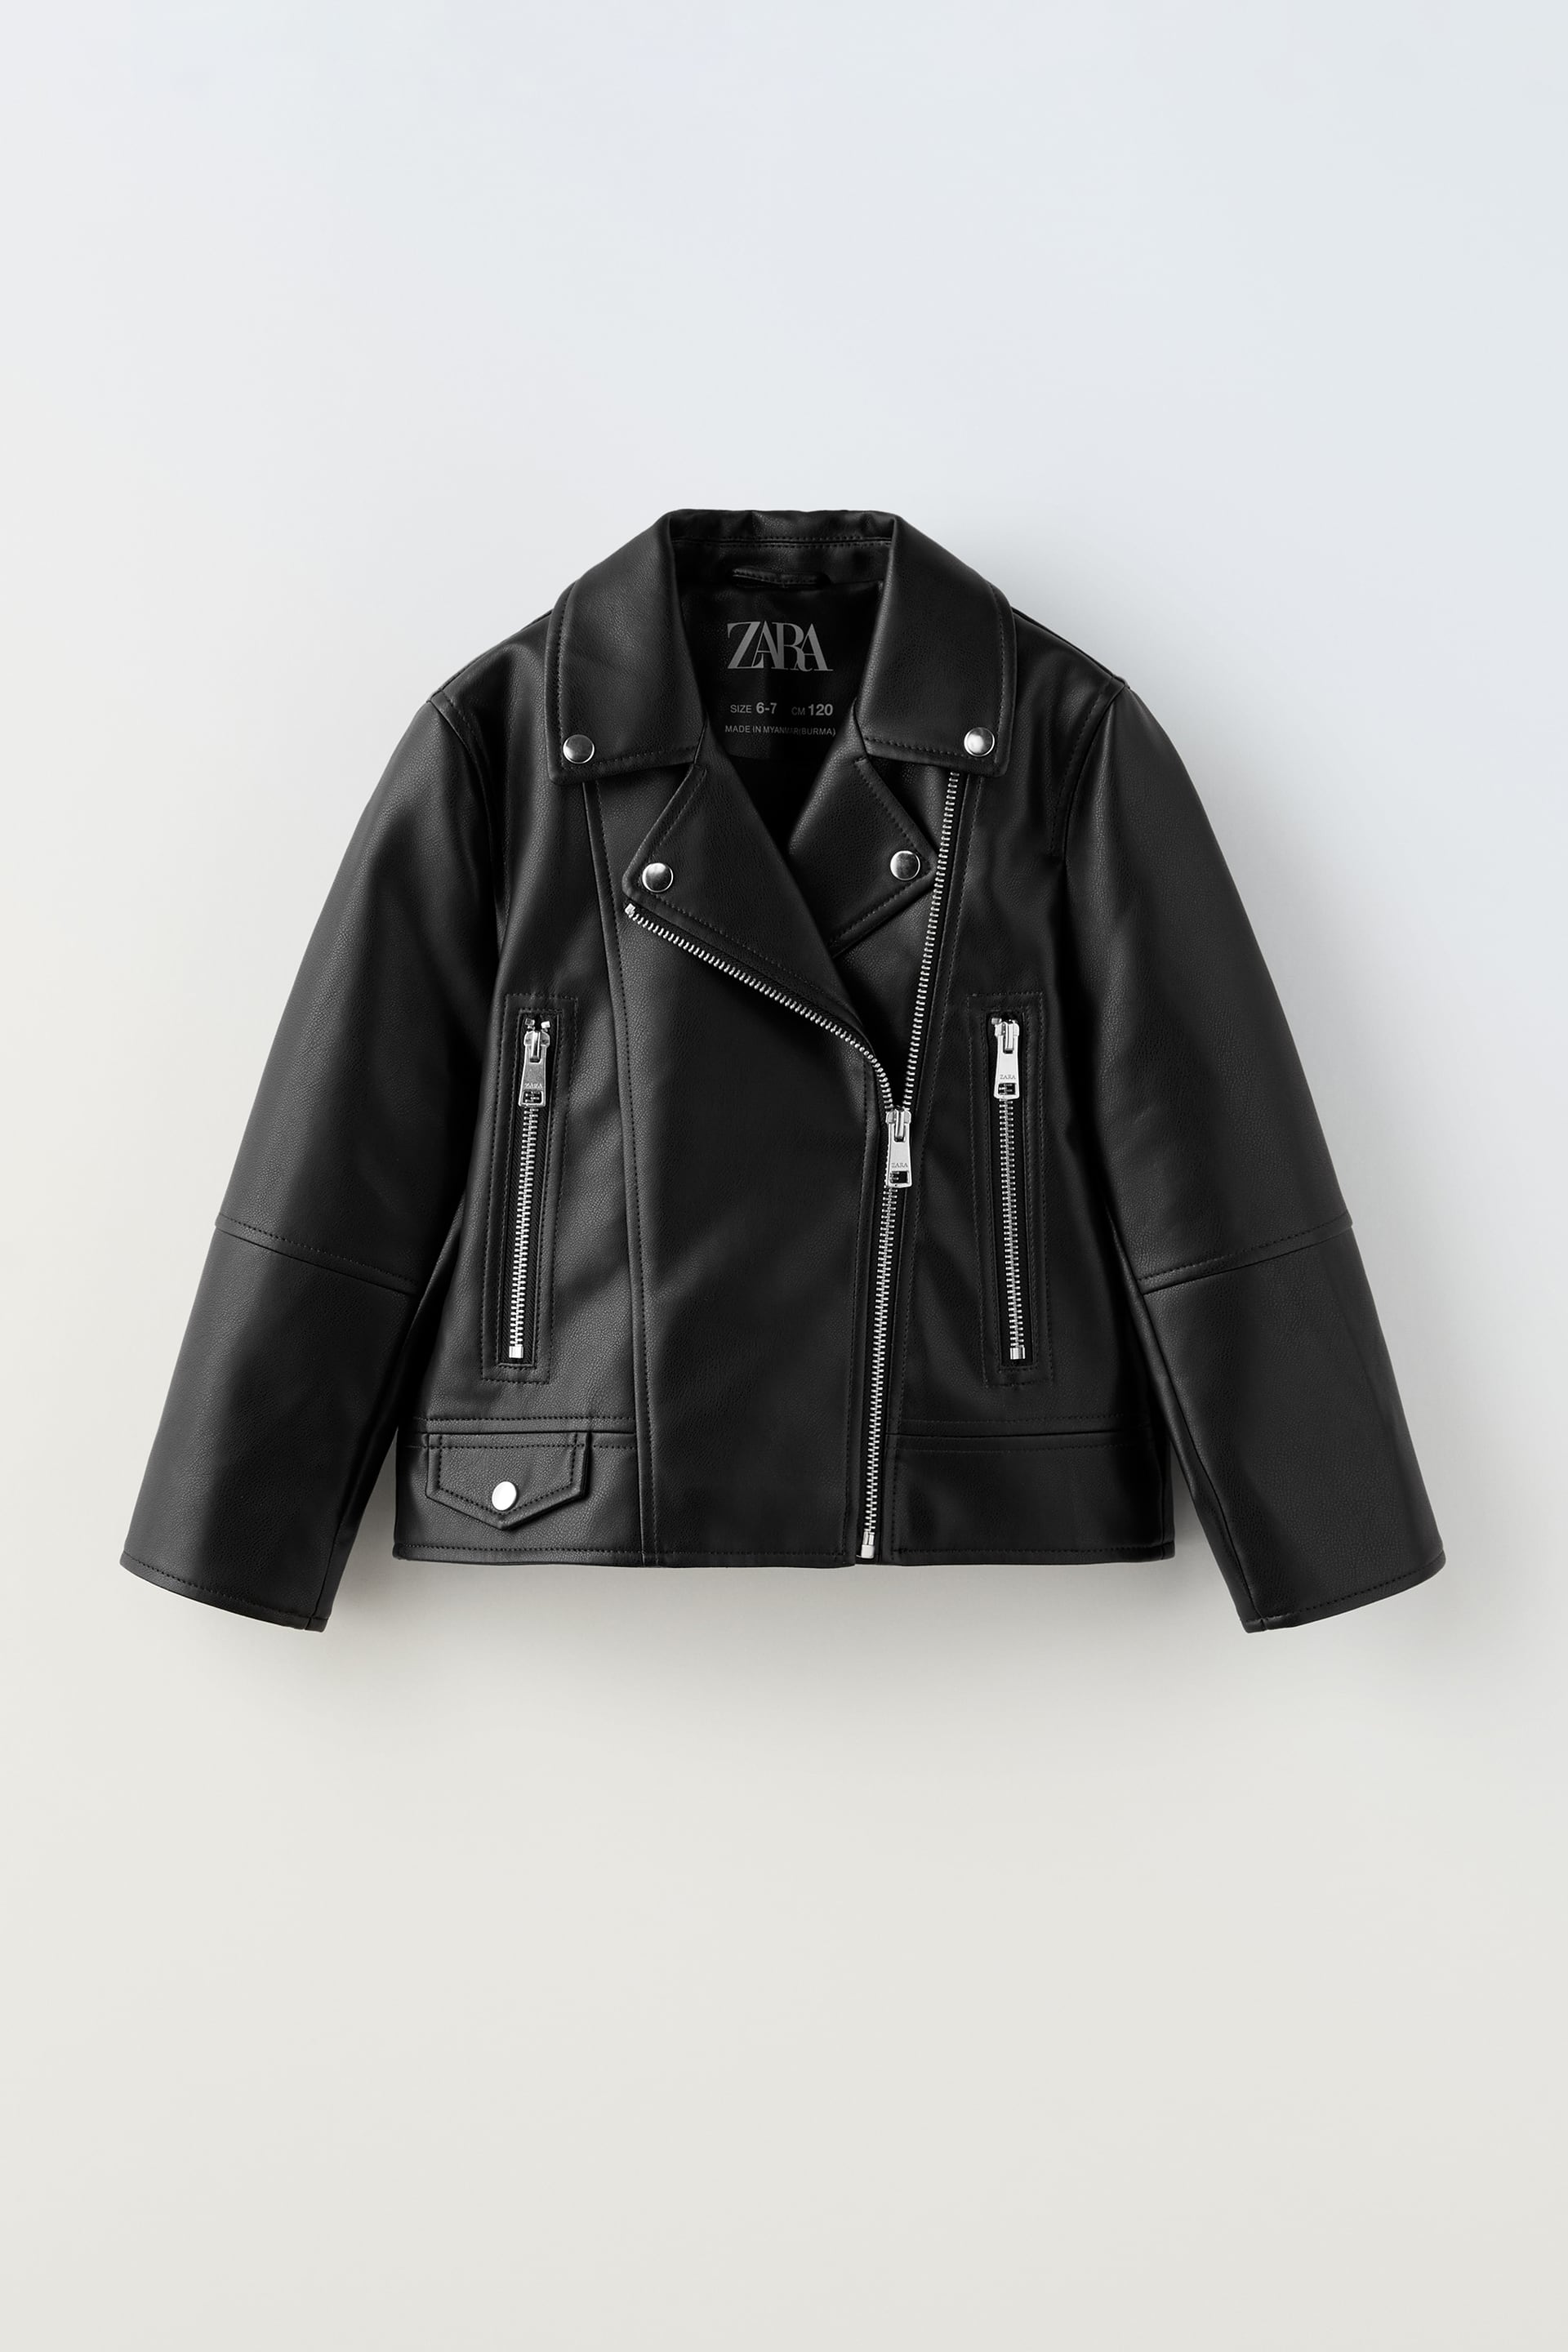 Байкерская куртка Zara, черный женская куртка из натуральной овечьей кожи черная длинная офисная куртка с отложным воротником длинными рукавами 3xl весна размера плюс